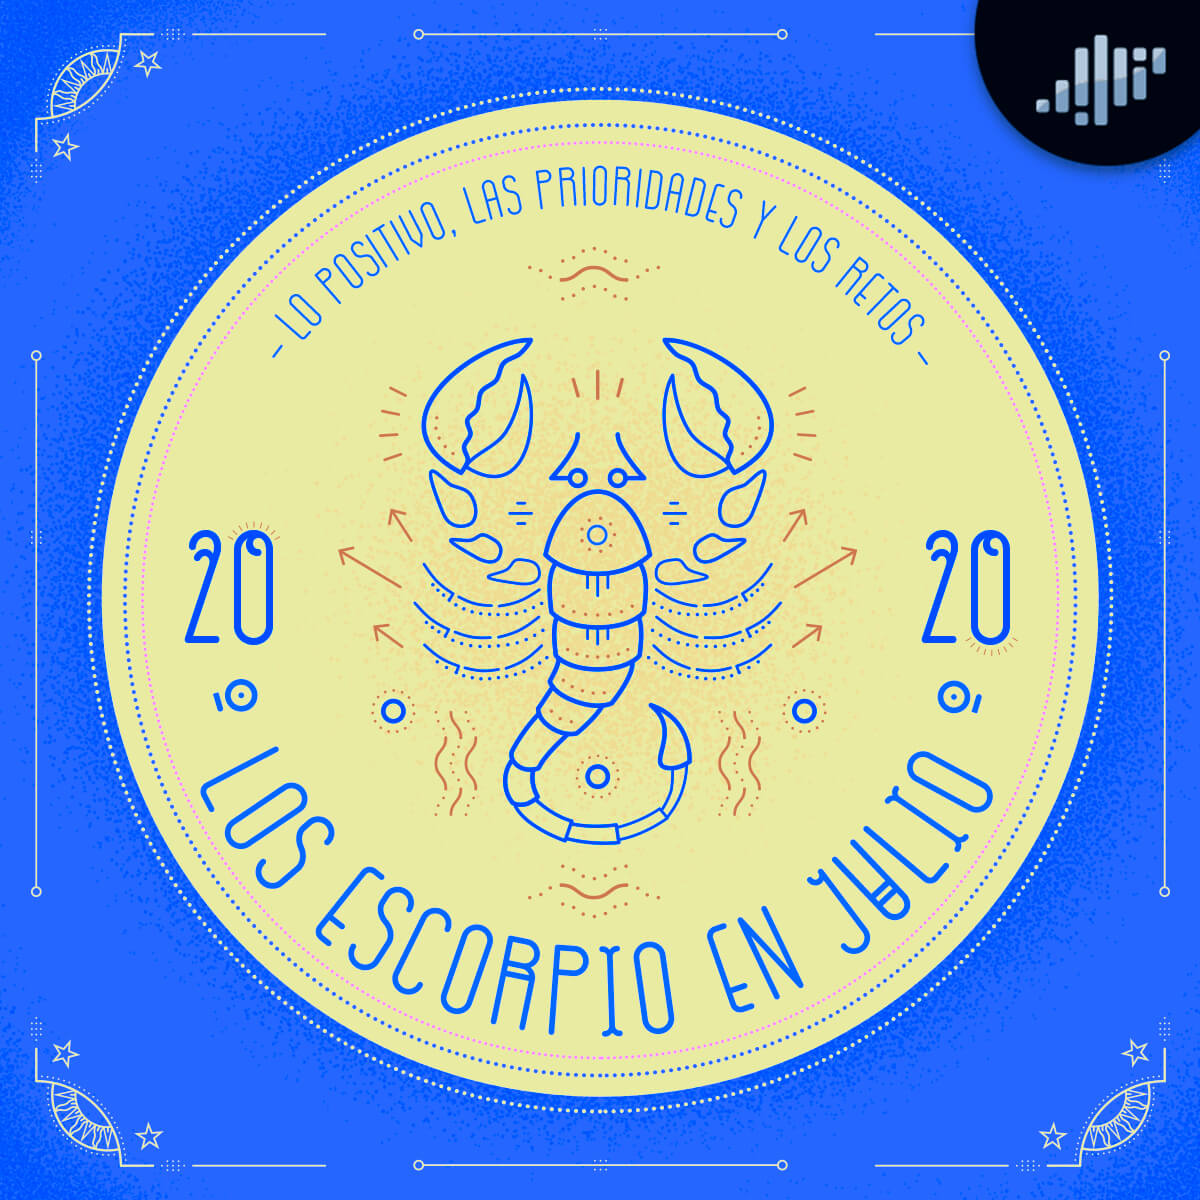 Escorpio en julio del 2020 | Signos zodiacales | Profe Villalobos